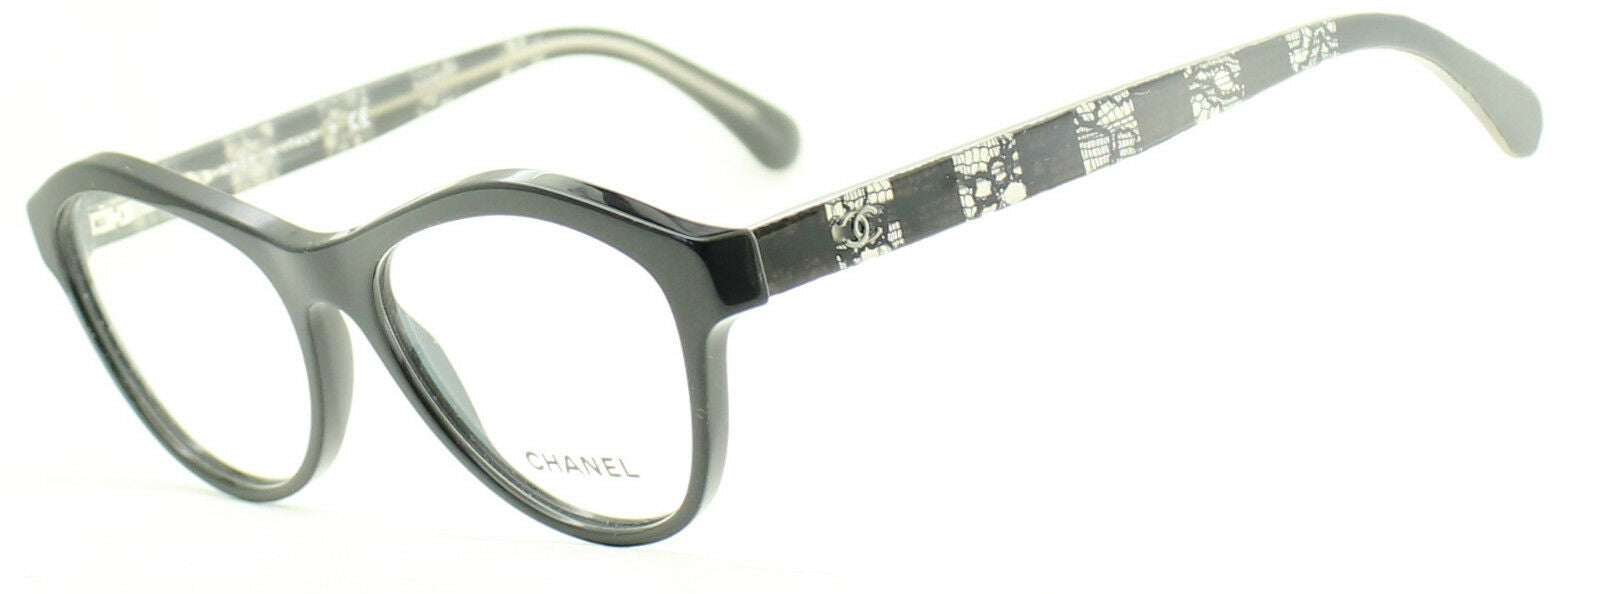 CHANEL 3291 c.501 54mm Eyewear FRAMES Eyeglasses RX Optical